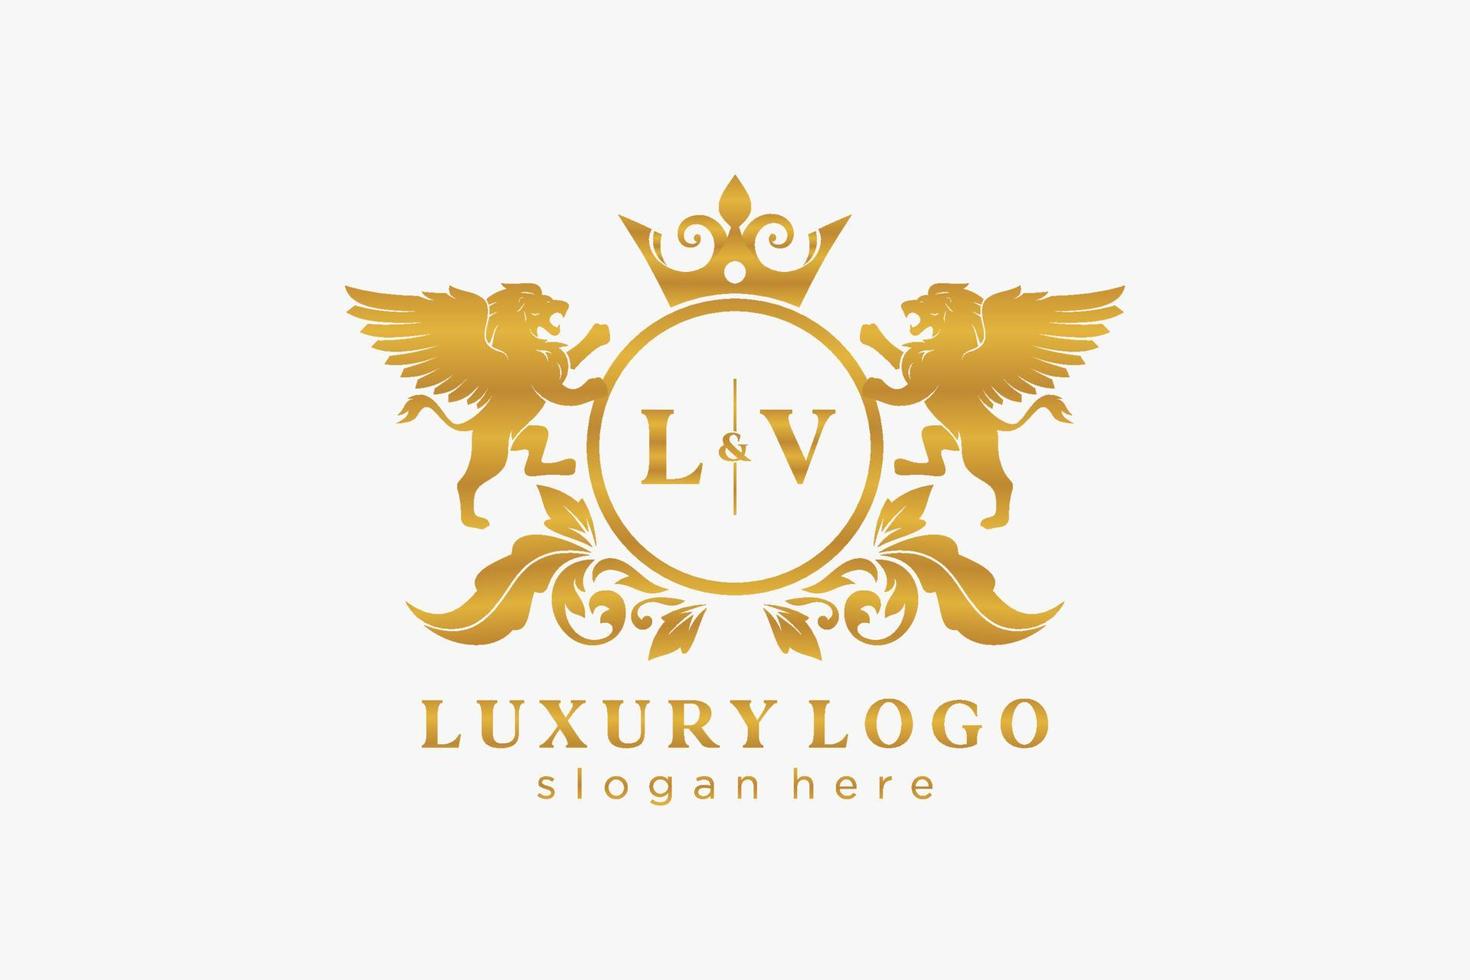 modèle initial de logo de luxe lv lettre lion royal dans l'art vectoriel pour le restaurant, la royauté, la boutique, le café, l'hôtel, l'héraldique, les bijoux, la mode et d'autres illustrations vectorielles.